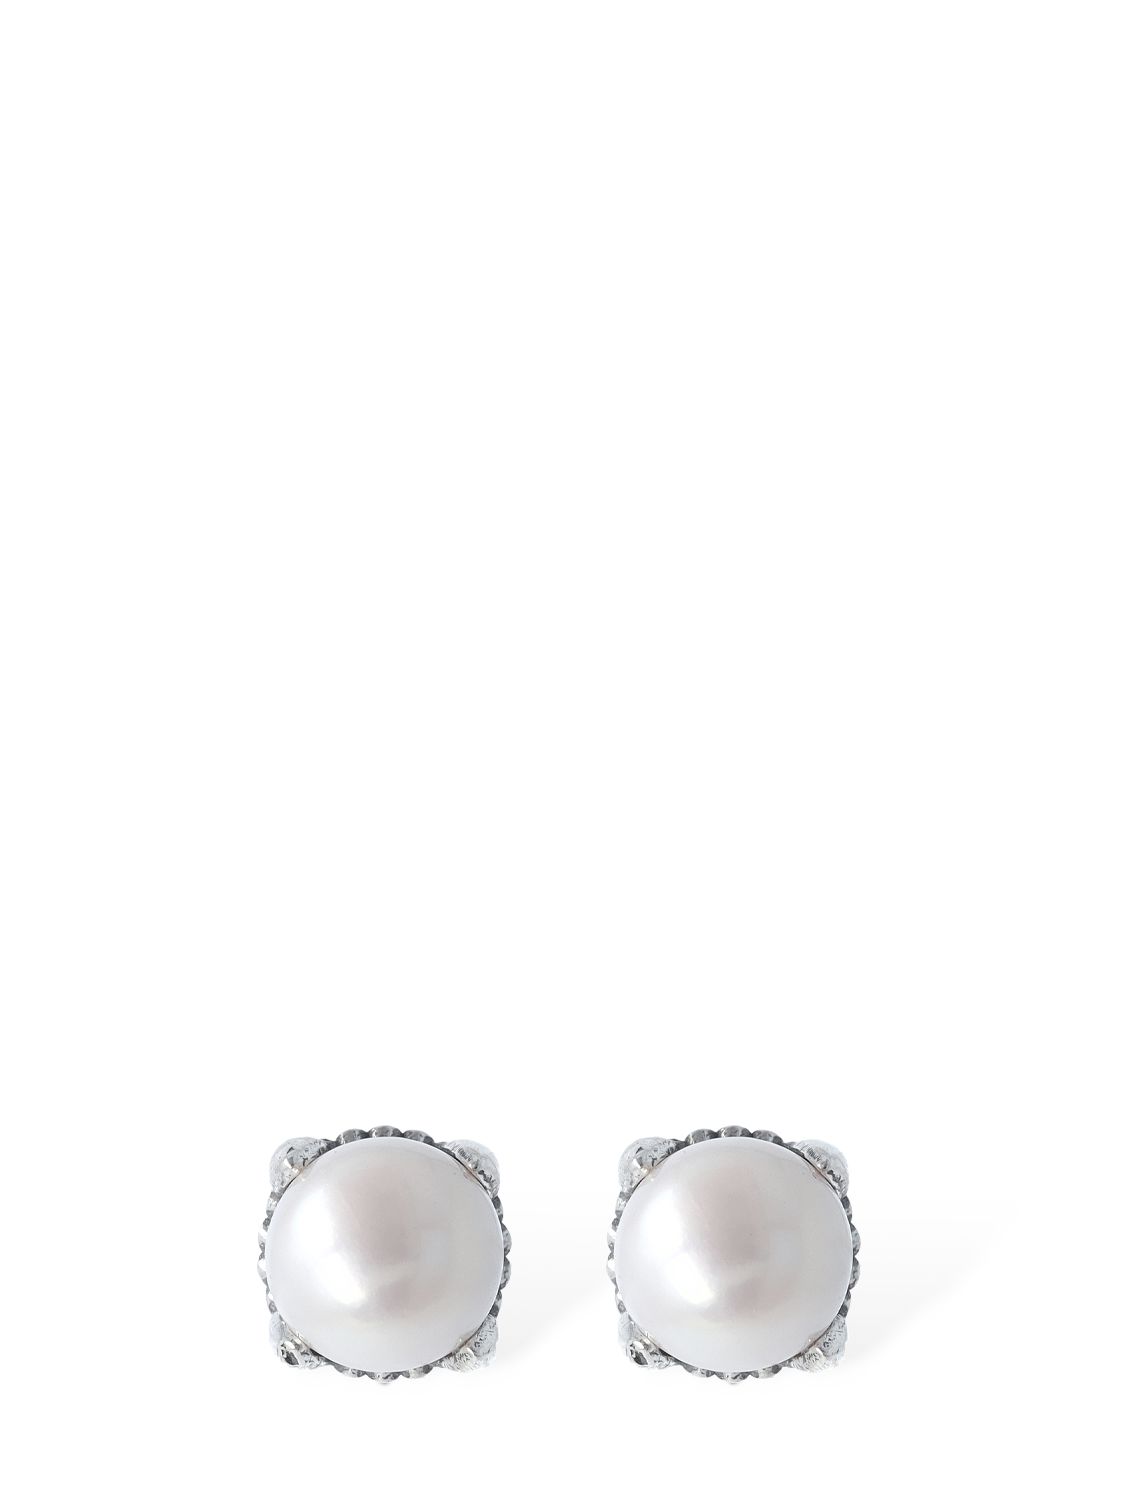 6.5mm Pearl Stud Earrings